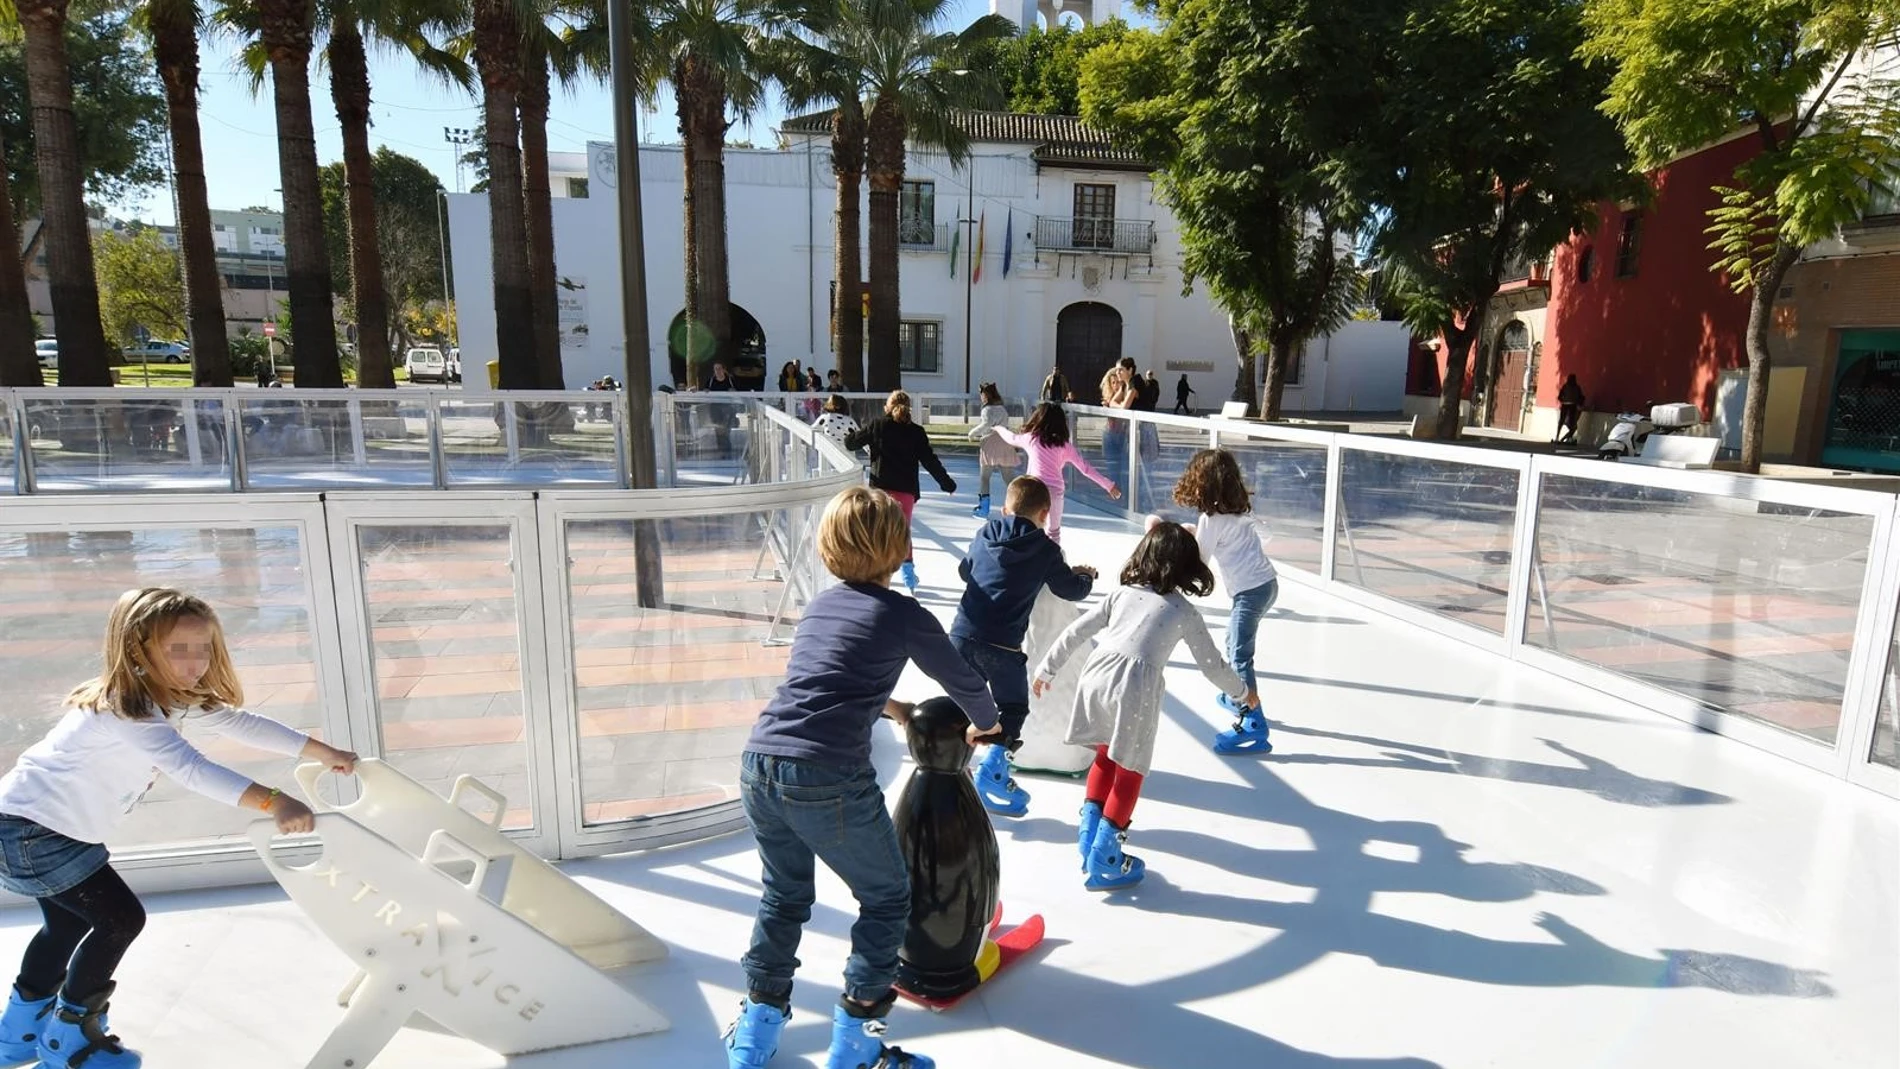 Menores participan en uno de los juegos organizados por la administración municipal en la localidad / Foto: La Razón